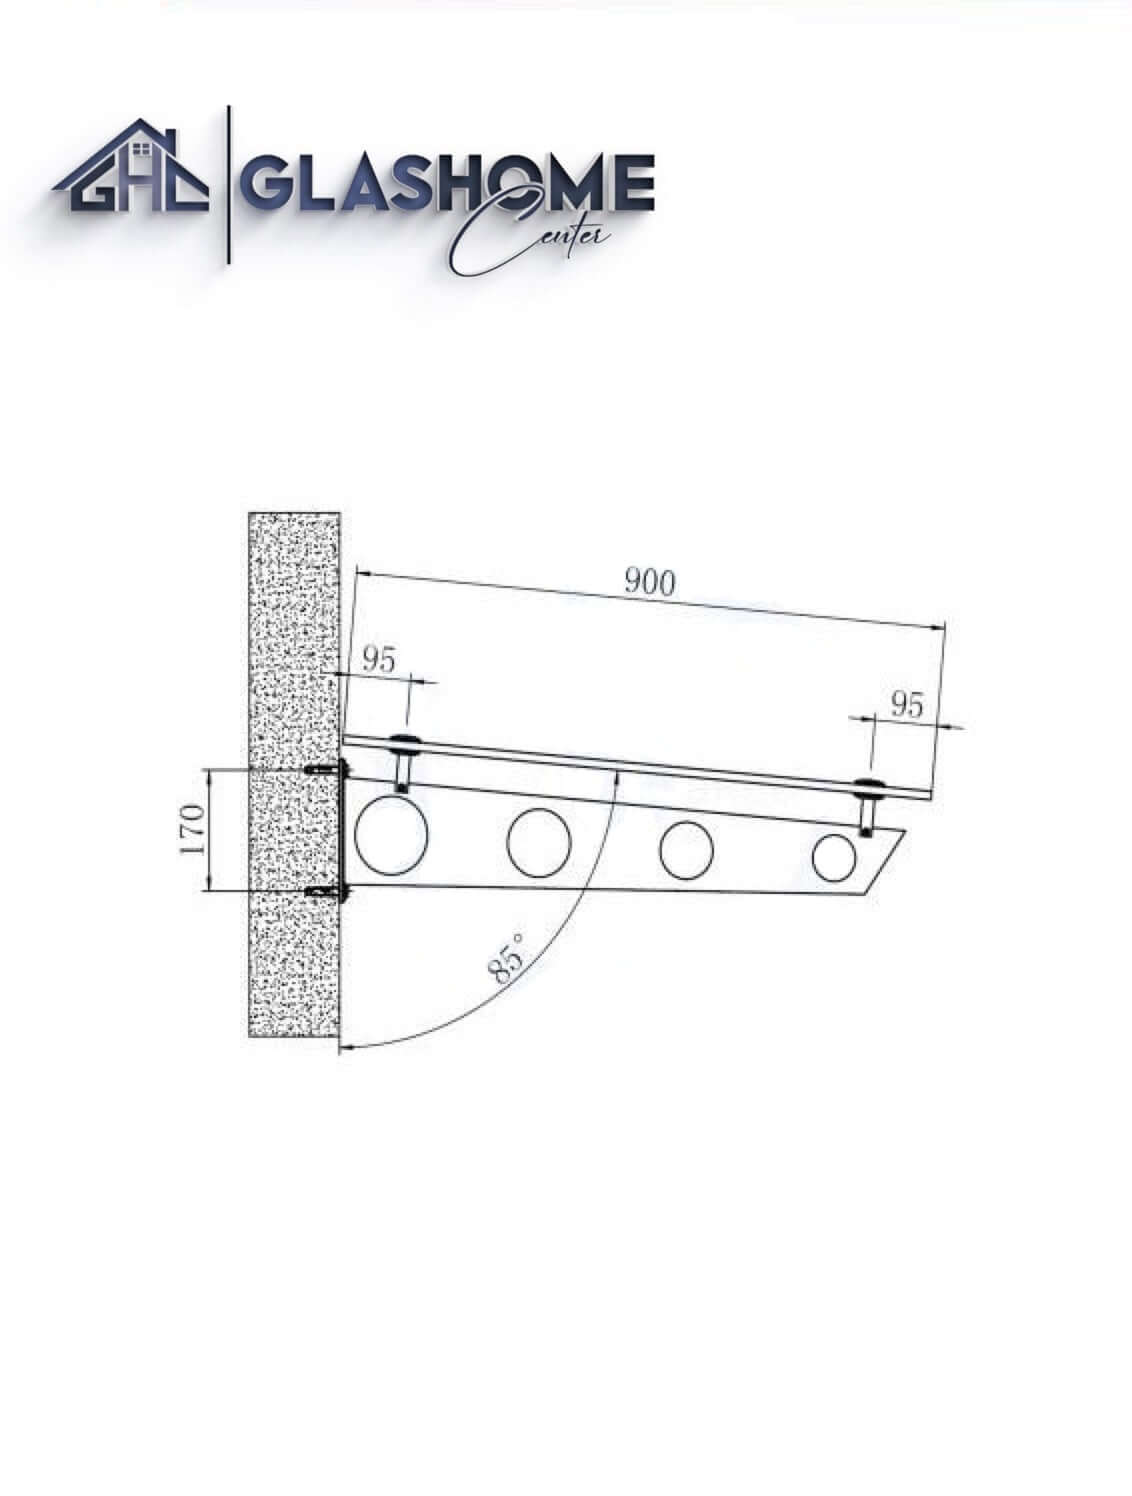 GlasHomeCenter - Glasvordach - Milchglas - 120x90cm - 13.1mm VSG - inkl. 2 Edelstahlhalterungen Variante "Stockholm"